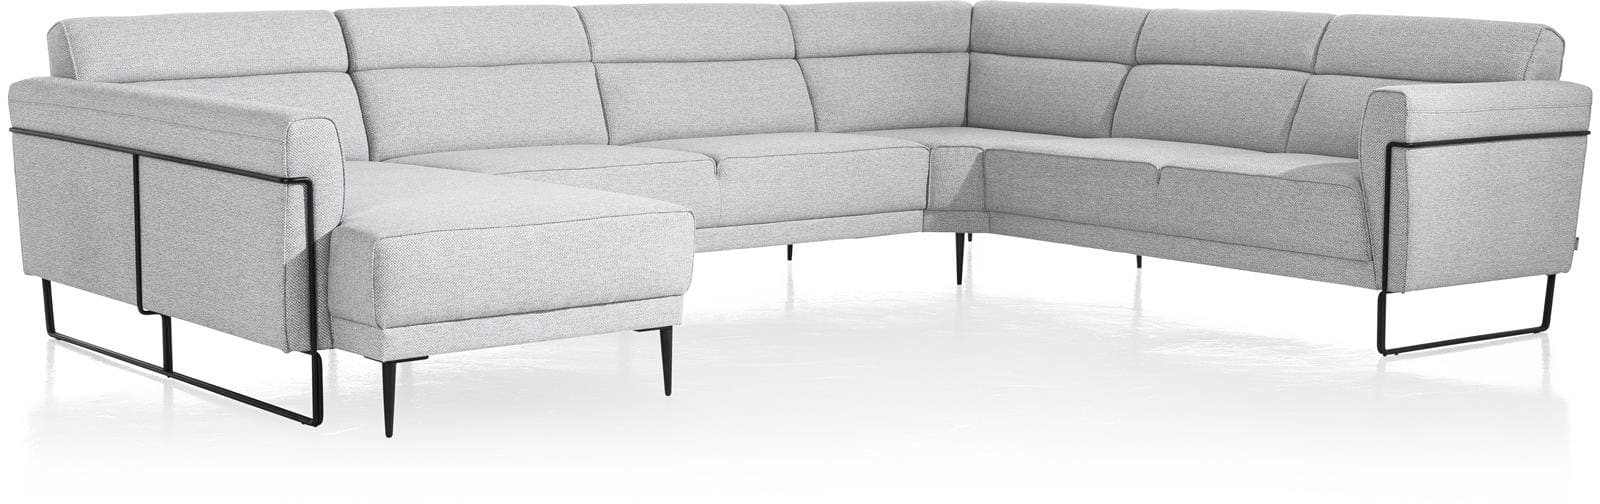 XOOON - Fiskardo - Skandinavisches Design - Sofas - 2.5-Sitzer ohne Armlehnen